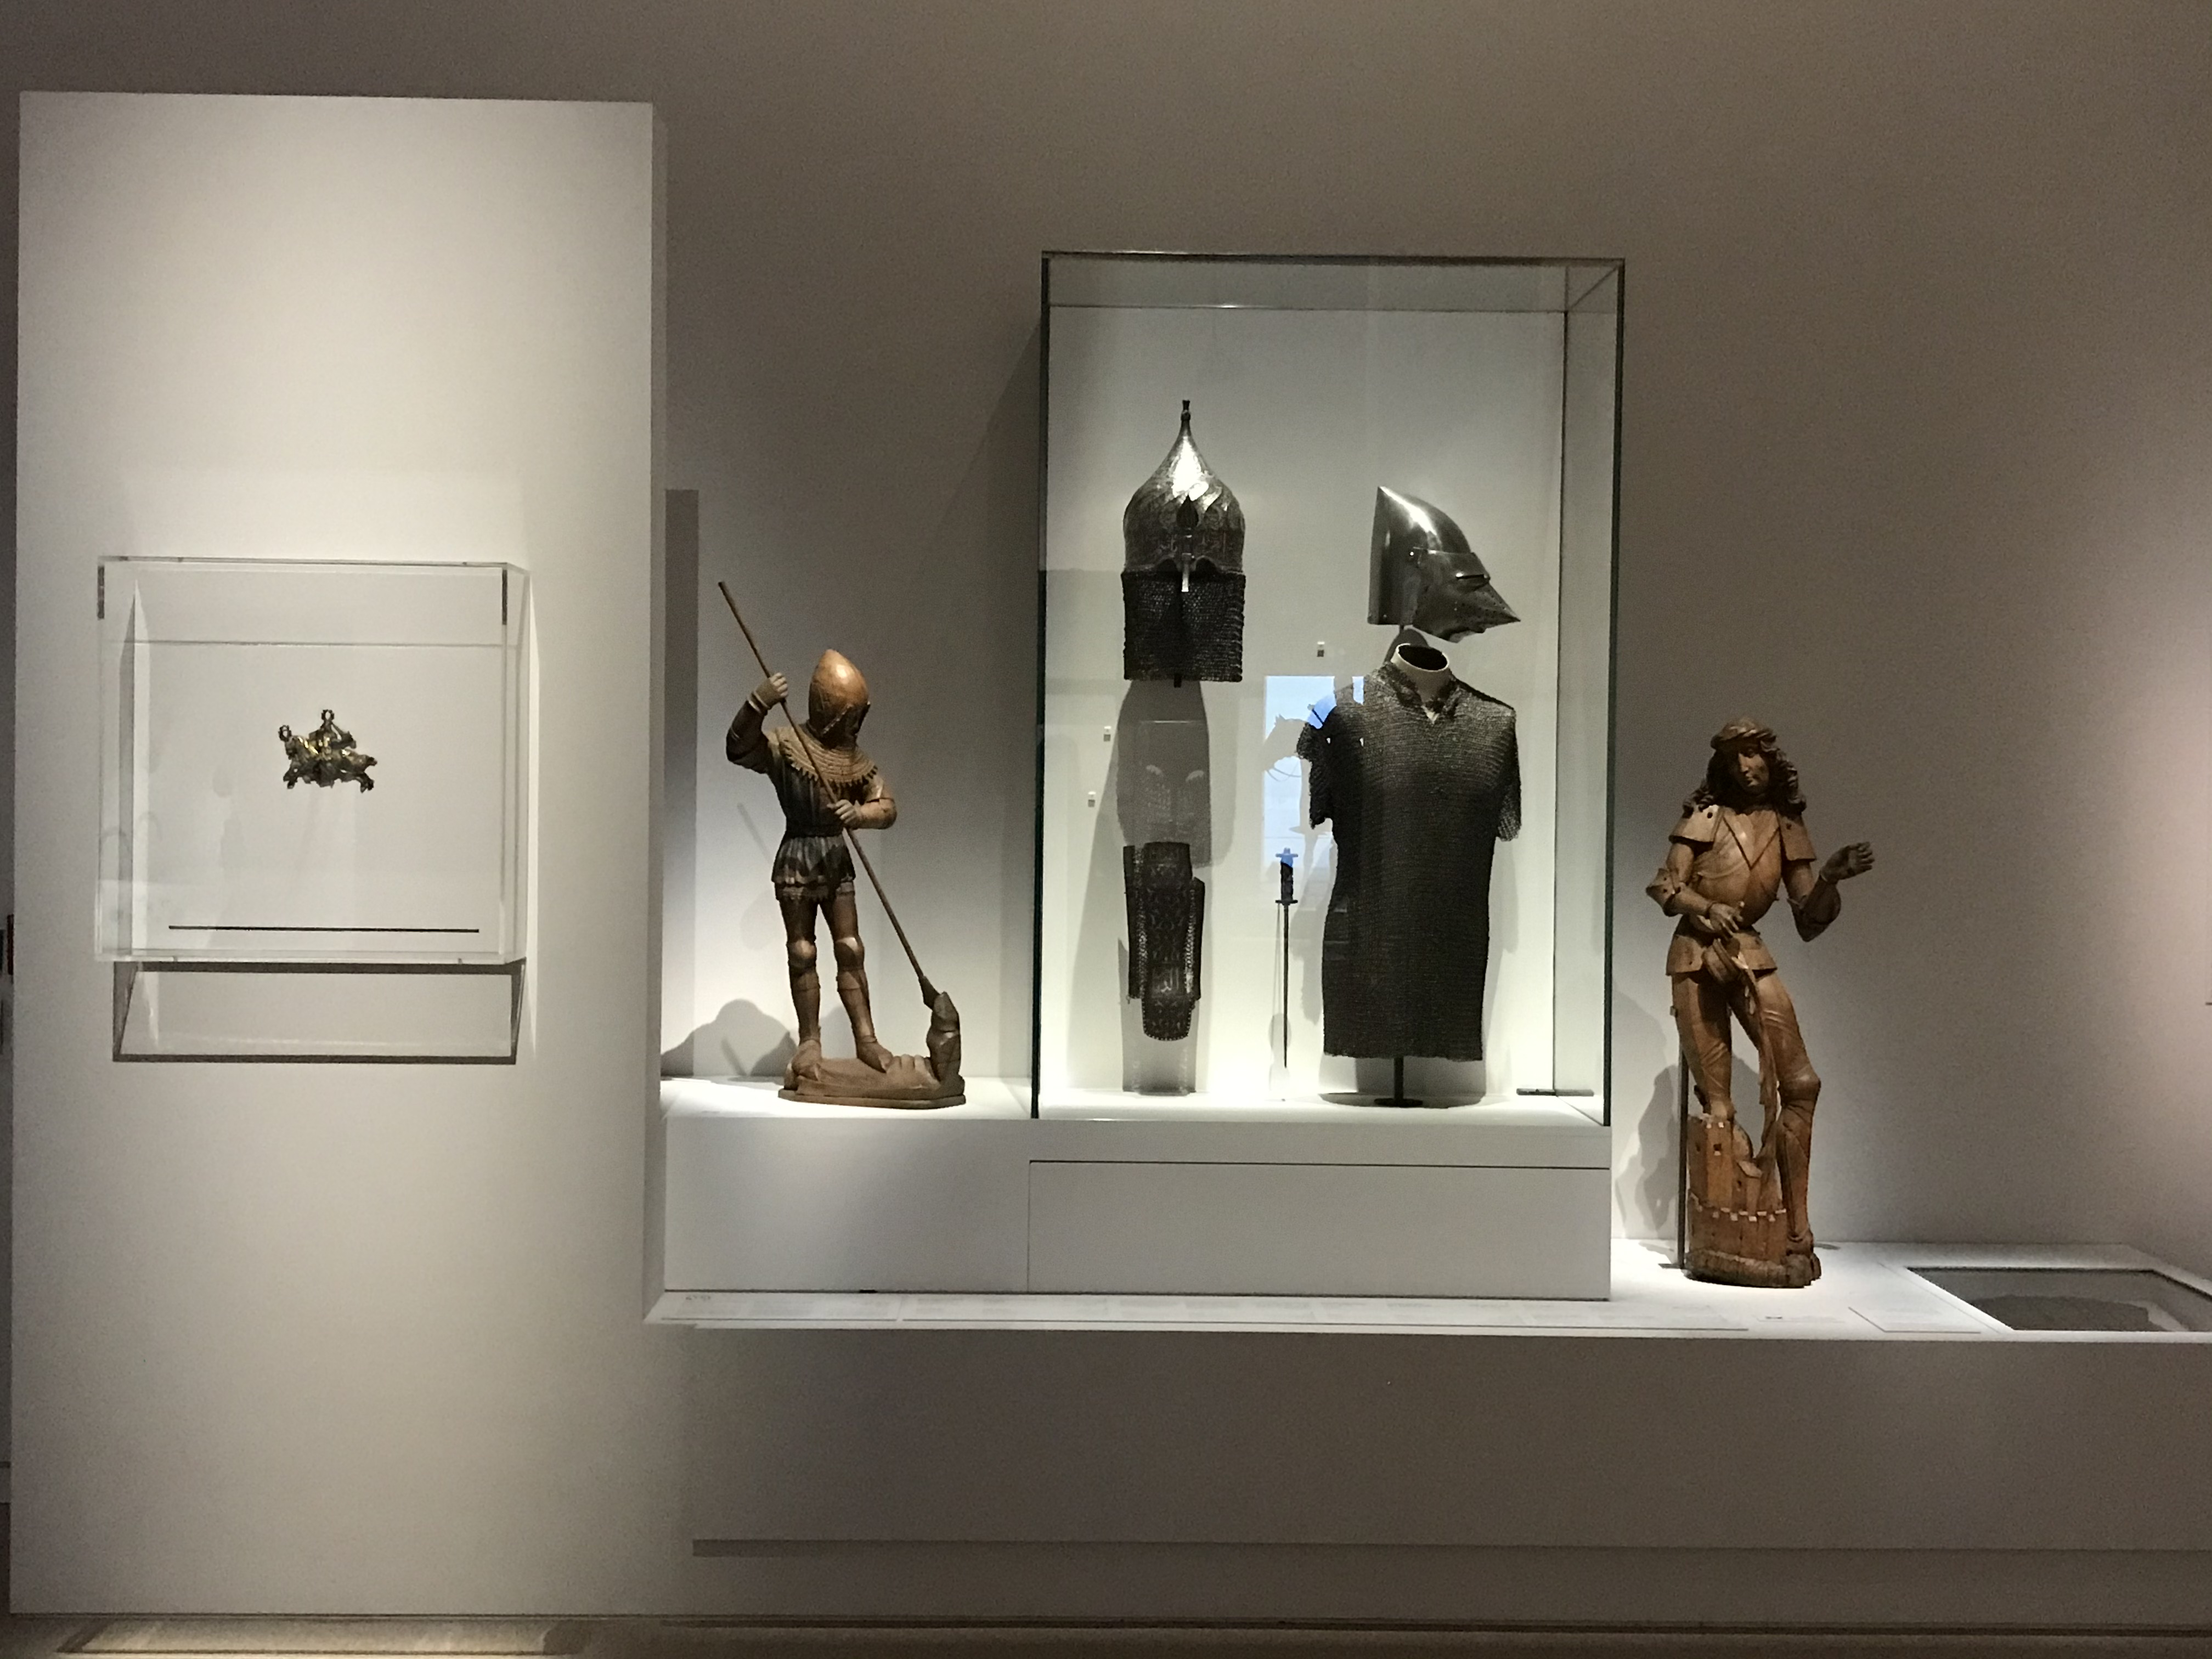 قطع فنية وملابس عسكرية للفرسان فى معرض الفروسية فى متحف اللوفر أبوظبى